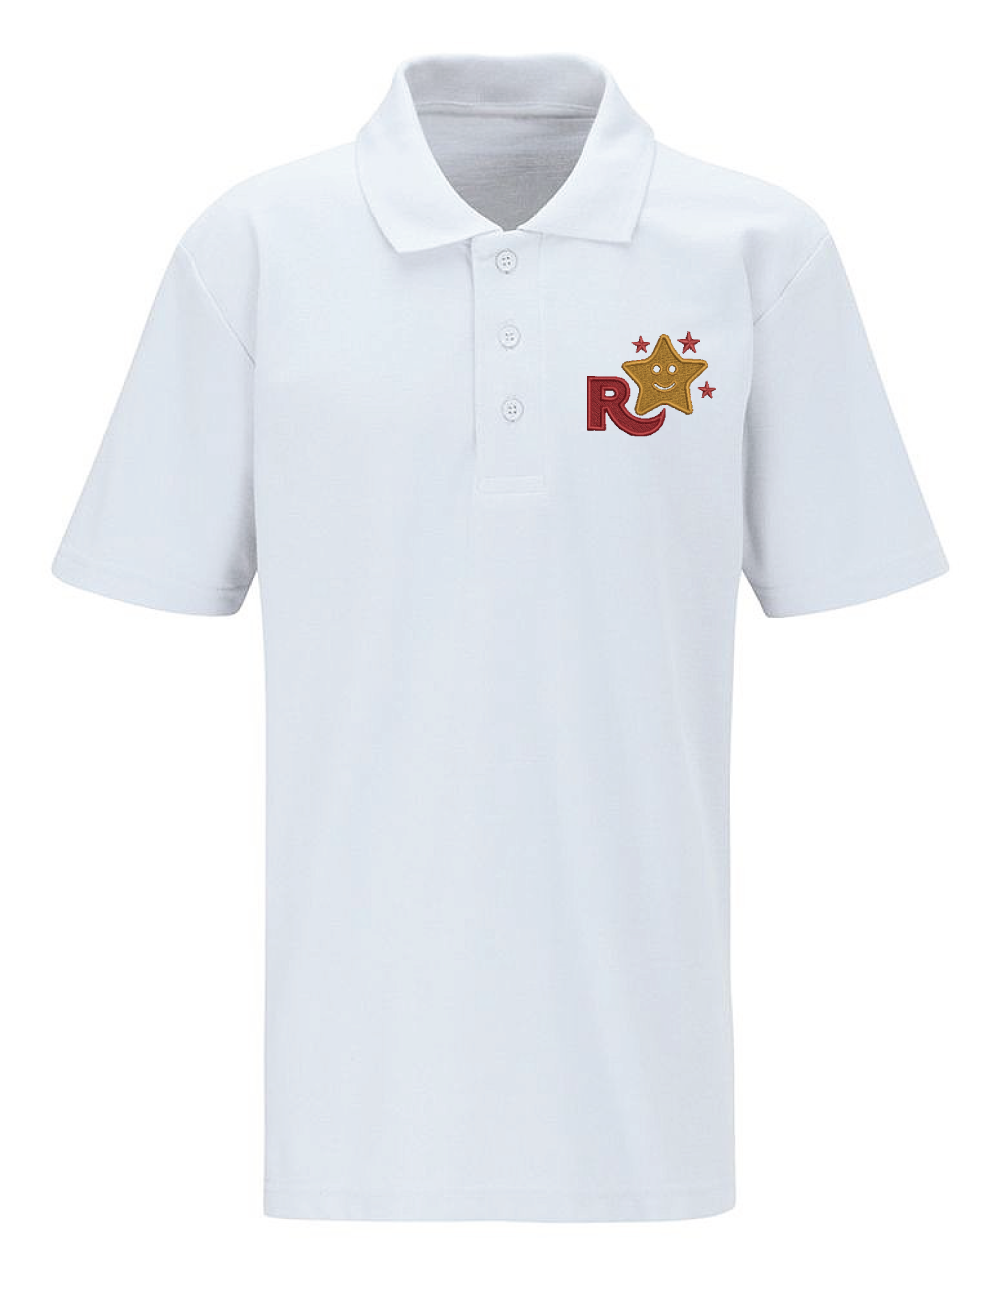 Rudheath Primary School Polo Shirt